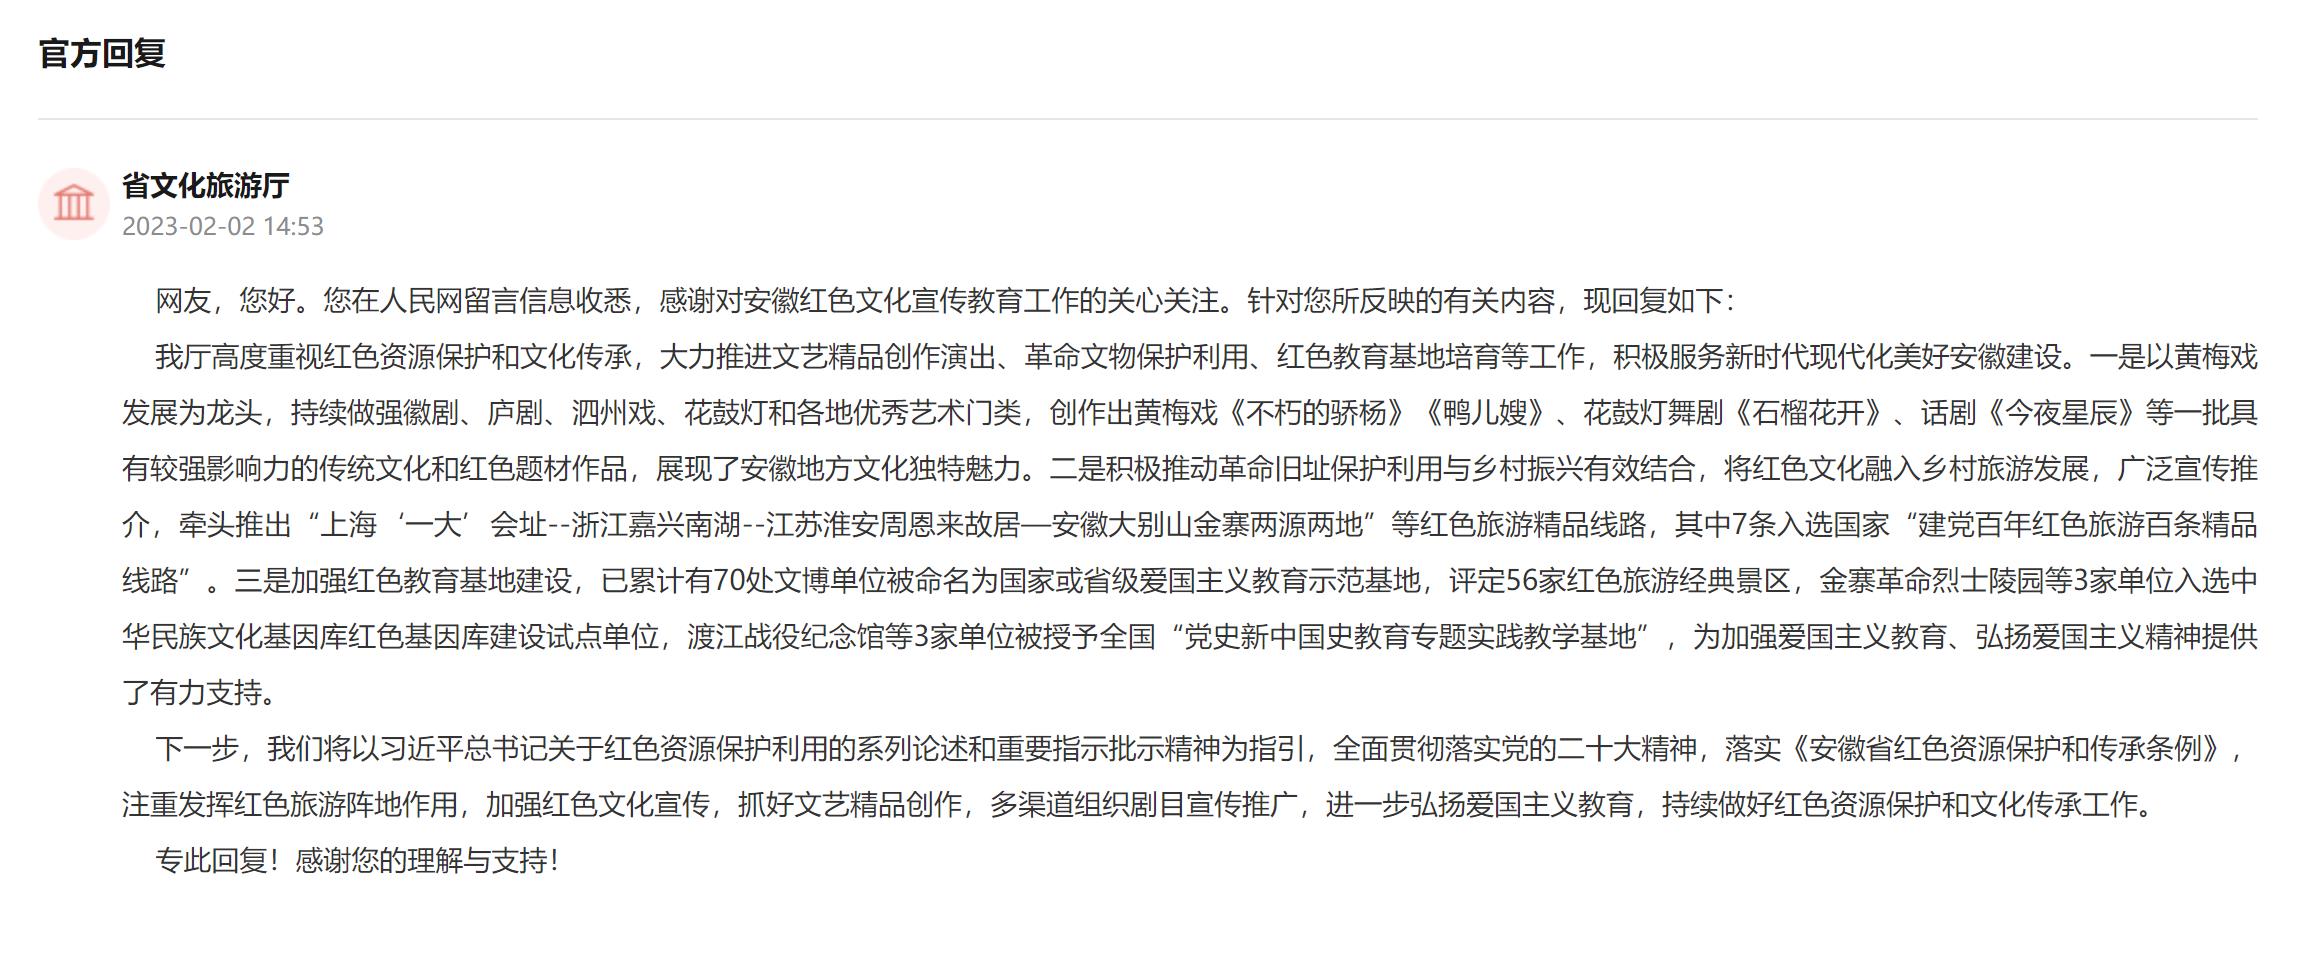 安徽省文化旅游厅回复。人民网“领导留言板”截图.jpg